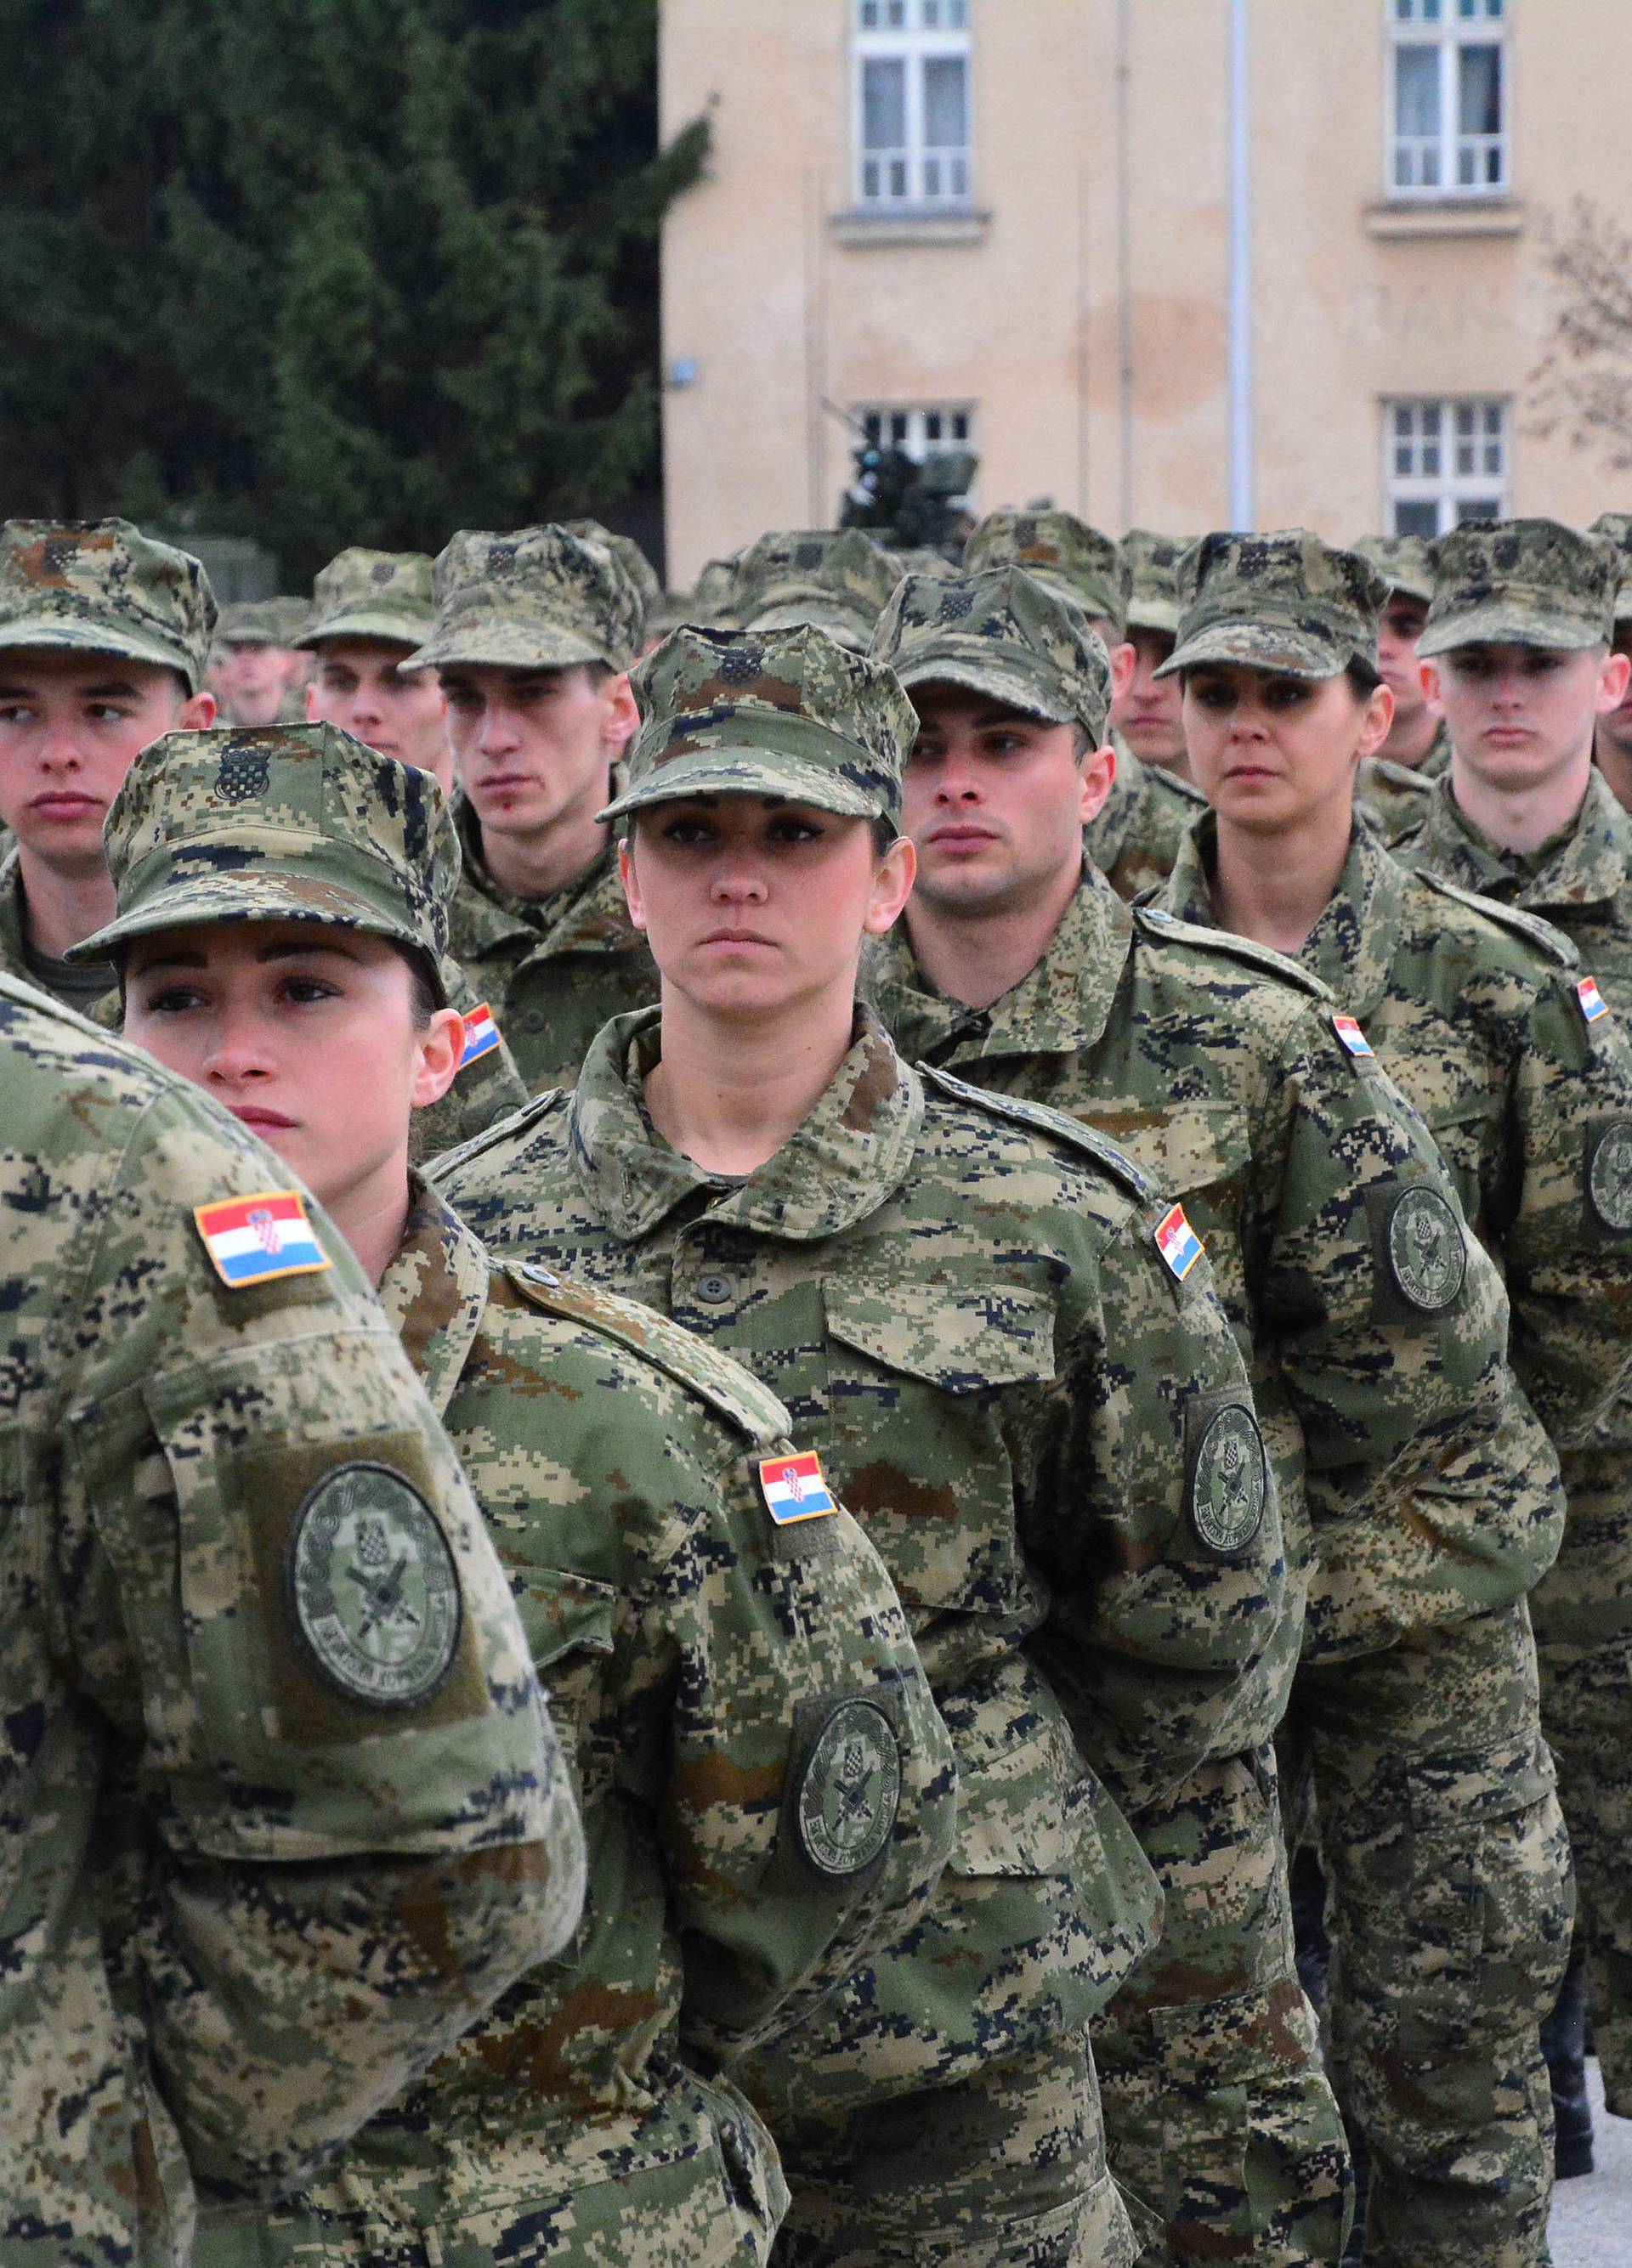 'Moj stric Josip Jović bio bi ponosan što želim biti vojnik'